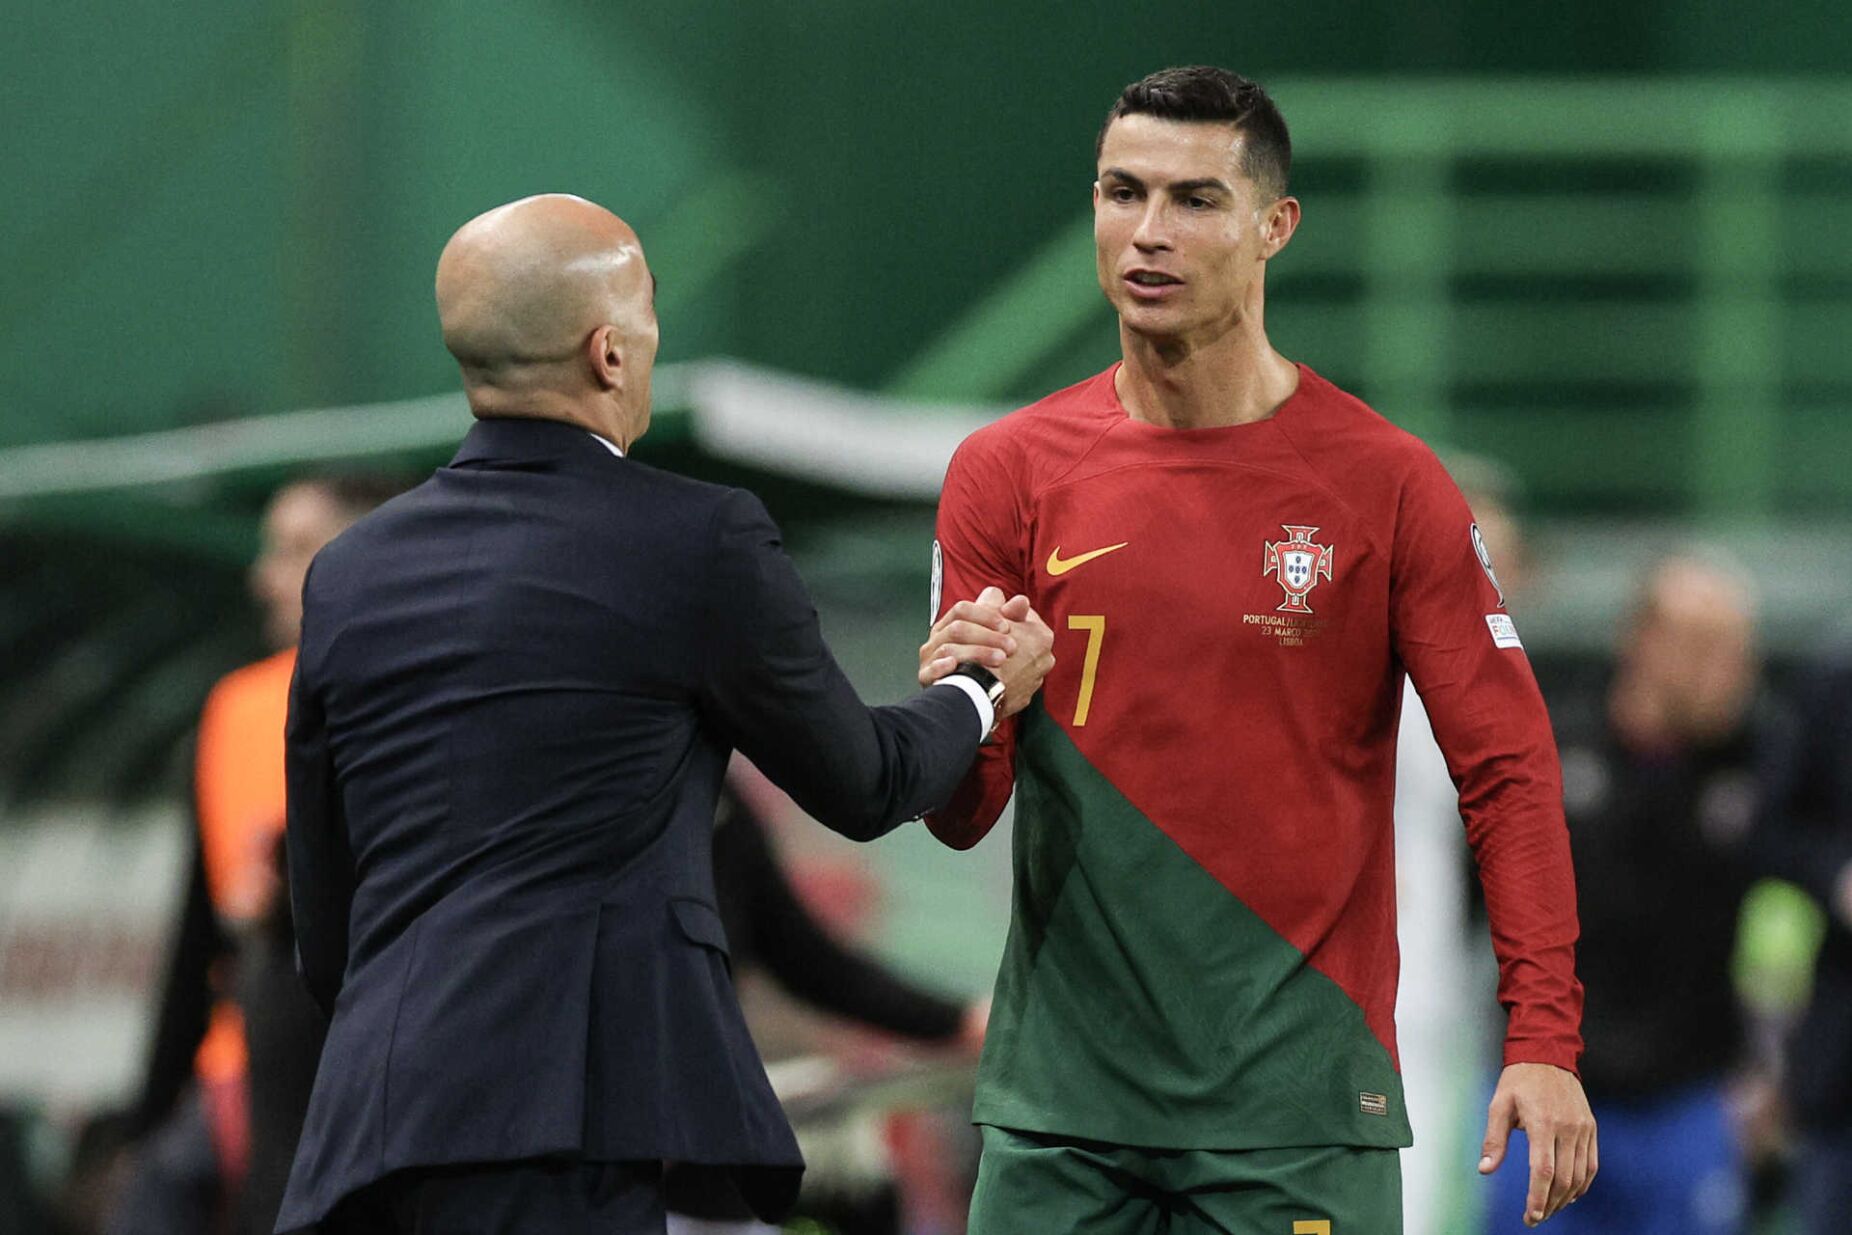 Ronaldo: «Na Europa não volto a jogar»